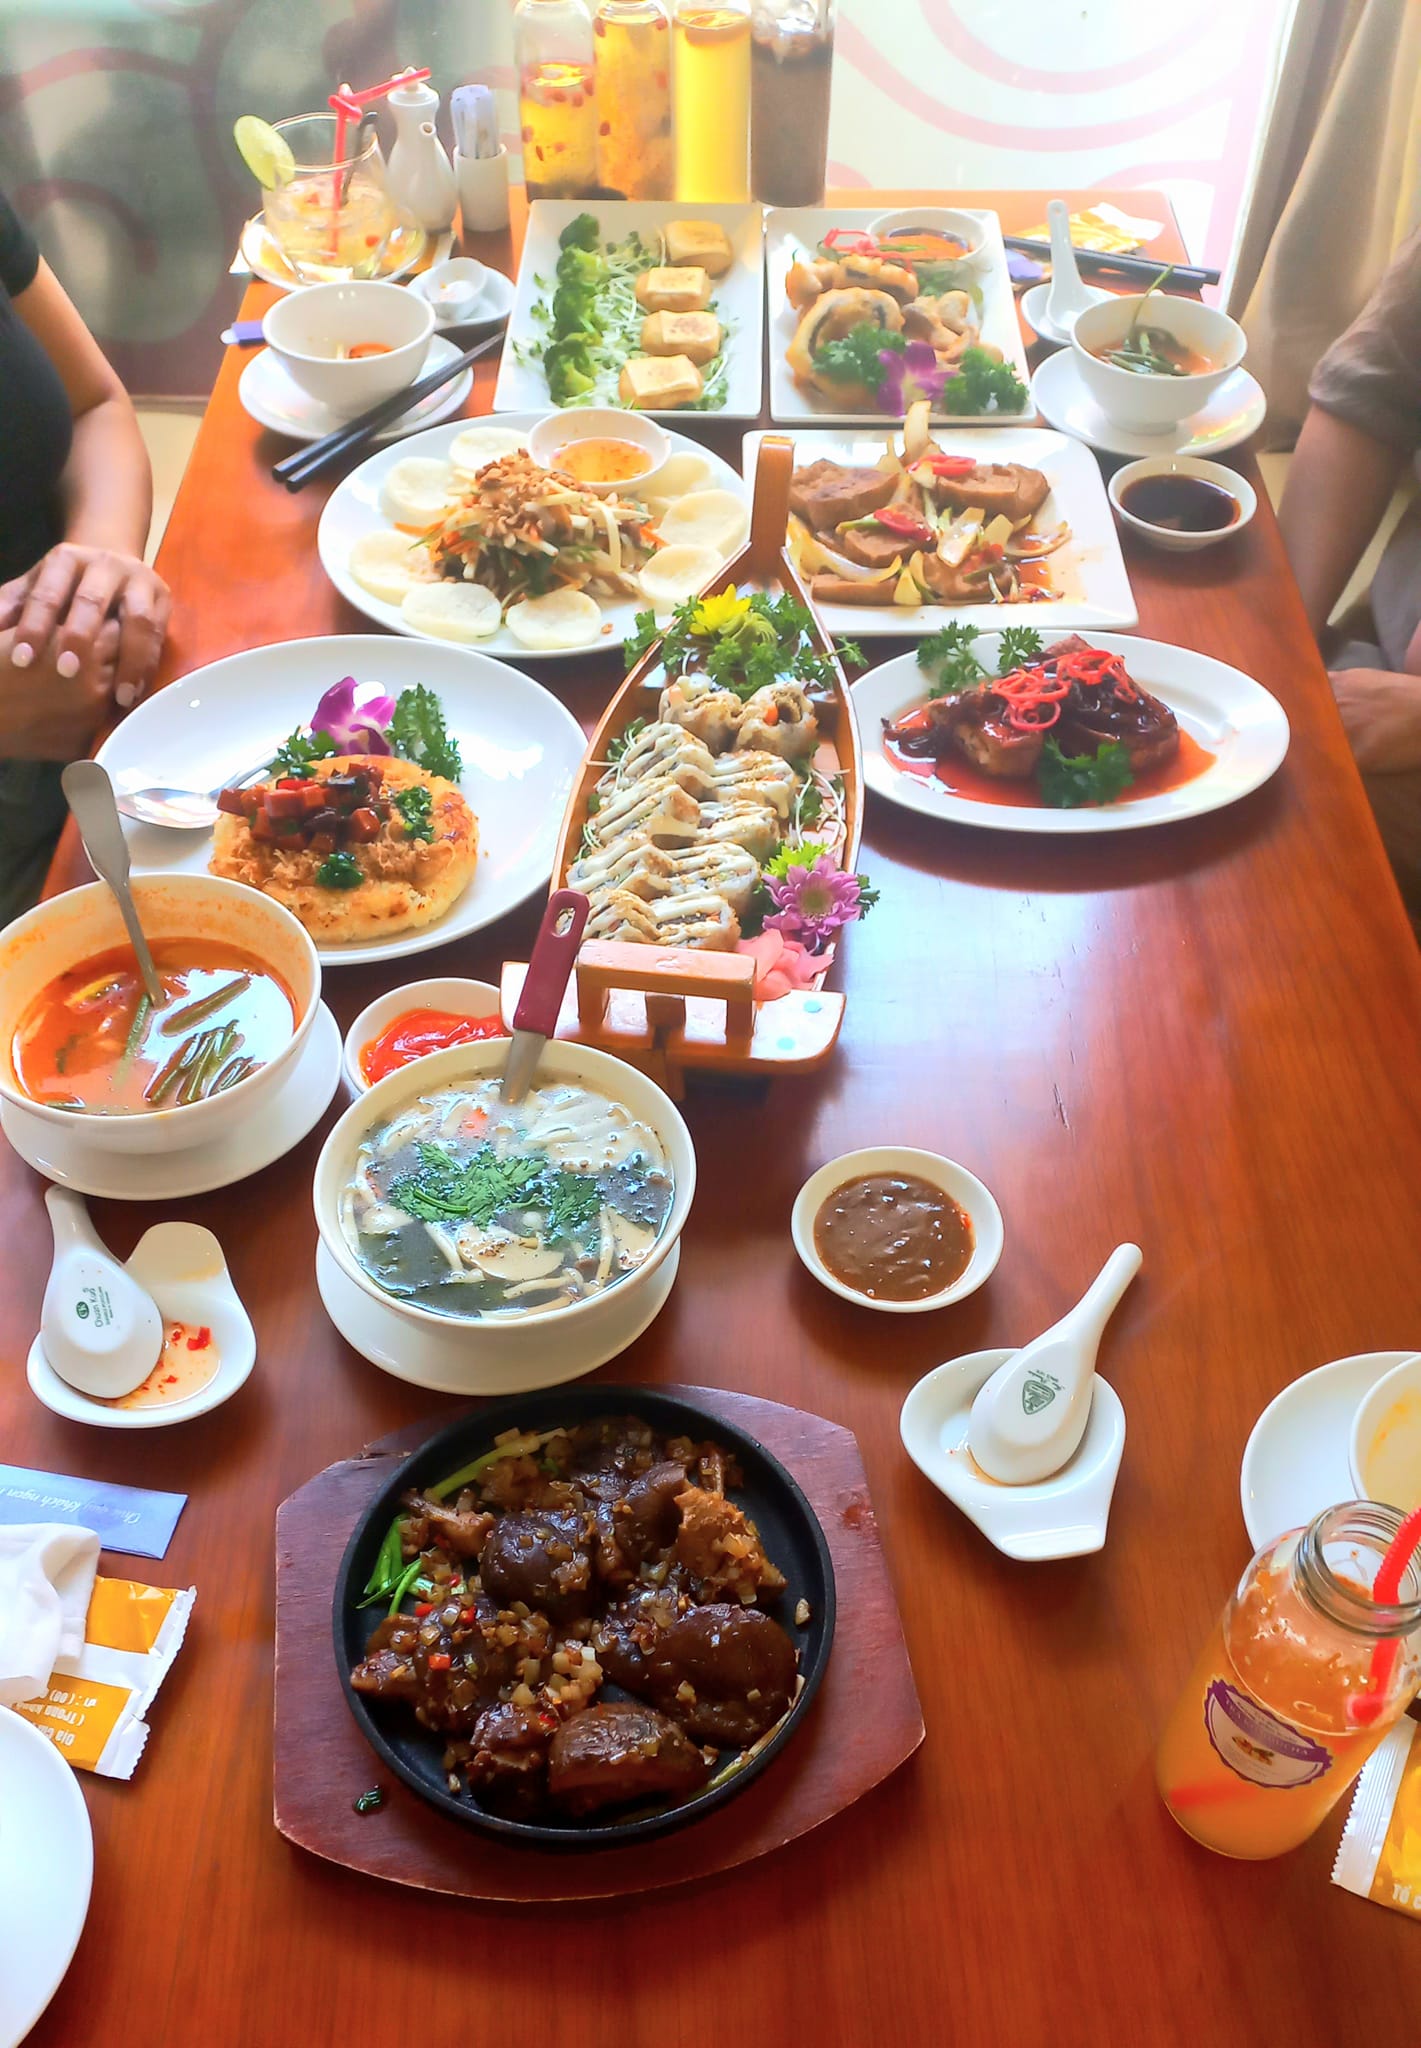 Top 10 quán chay ngon nổi tiếng nhất ở thành phố Hồ Chí Minh - Nhà hàng chay Thiện Duyên